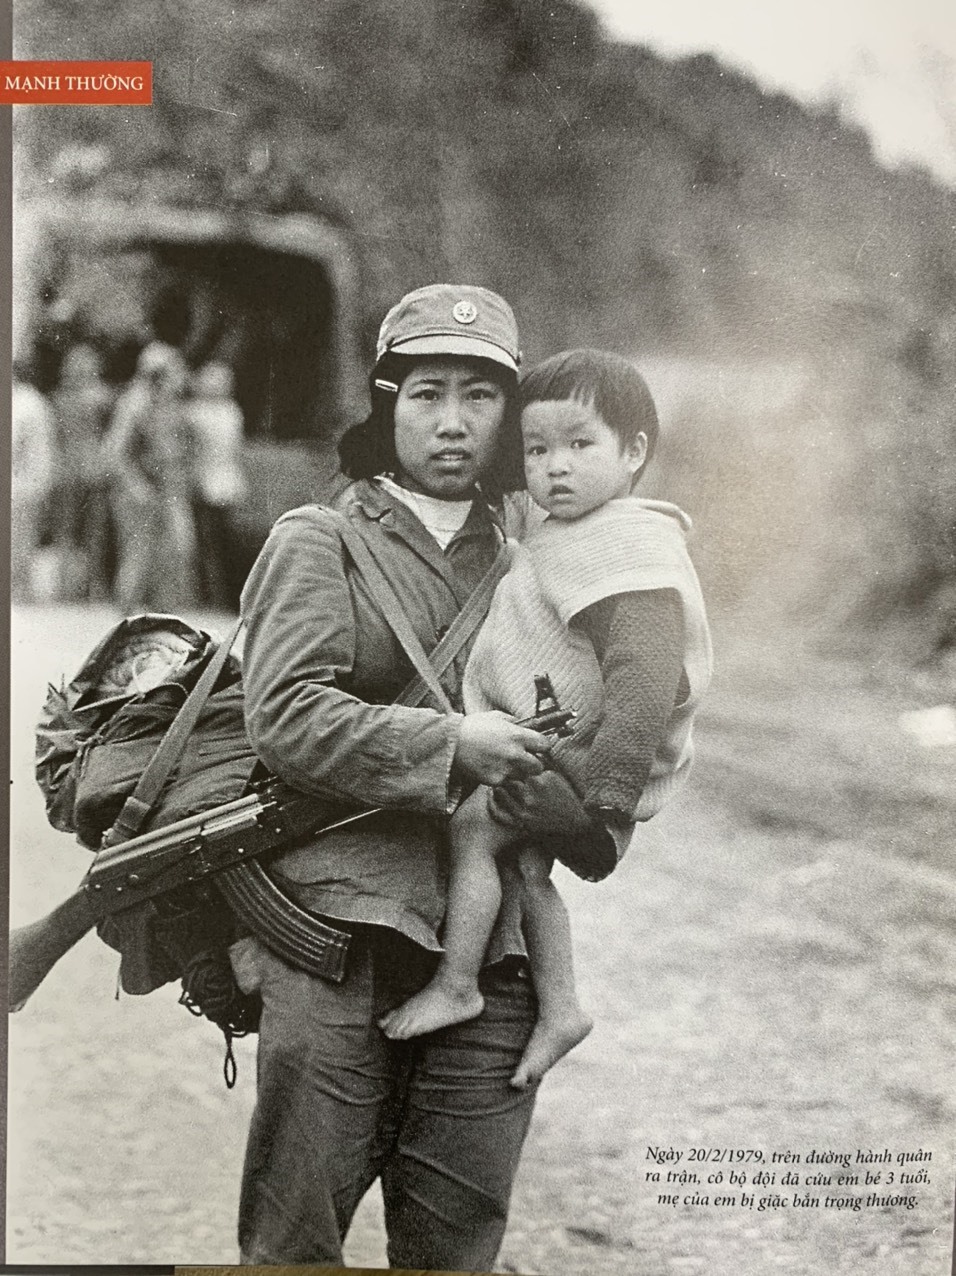 Một trong những bức ảnh mà Nghệ sĩ nhiếp ảnh Trần Mạnh Thường thích nhất. “Ngày 20.2.1979, trên đường hành quân ra trận, cô bộ độ đã cứu em bé 3 tuổi, mẹ của em bị giặc bắn trọng thương“.